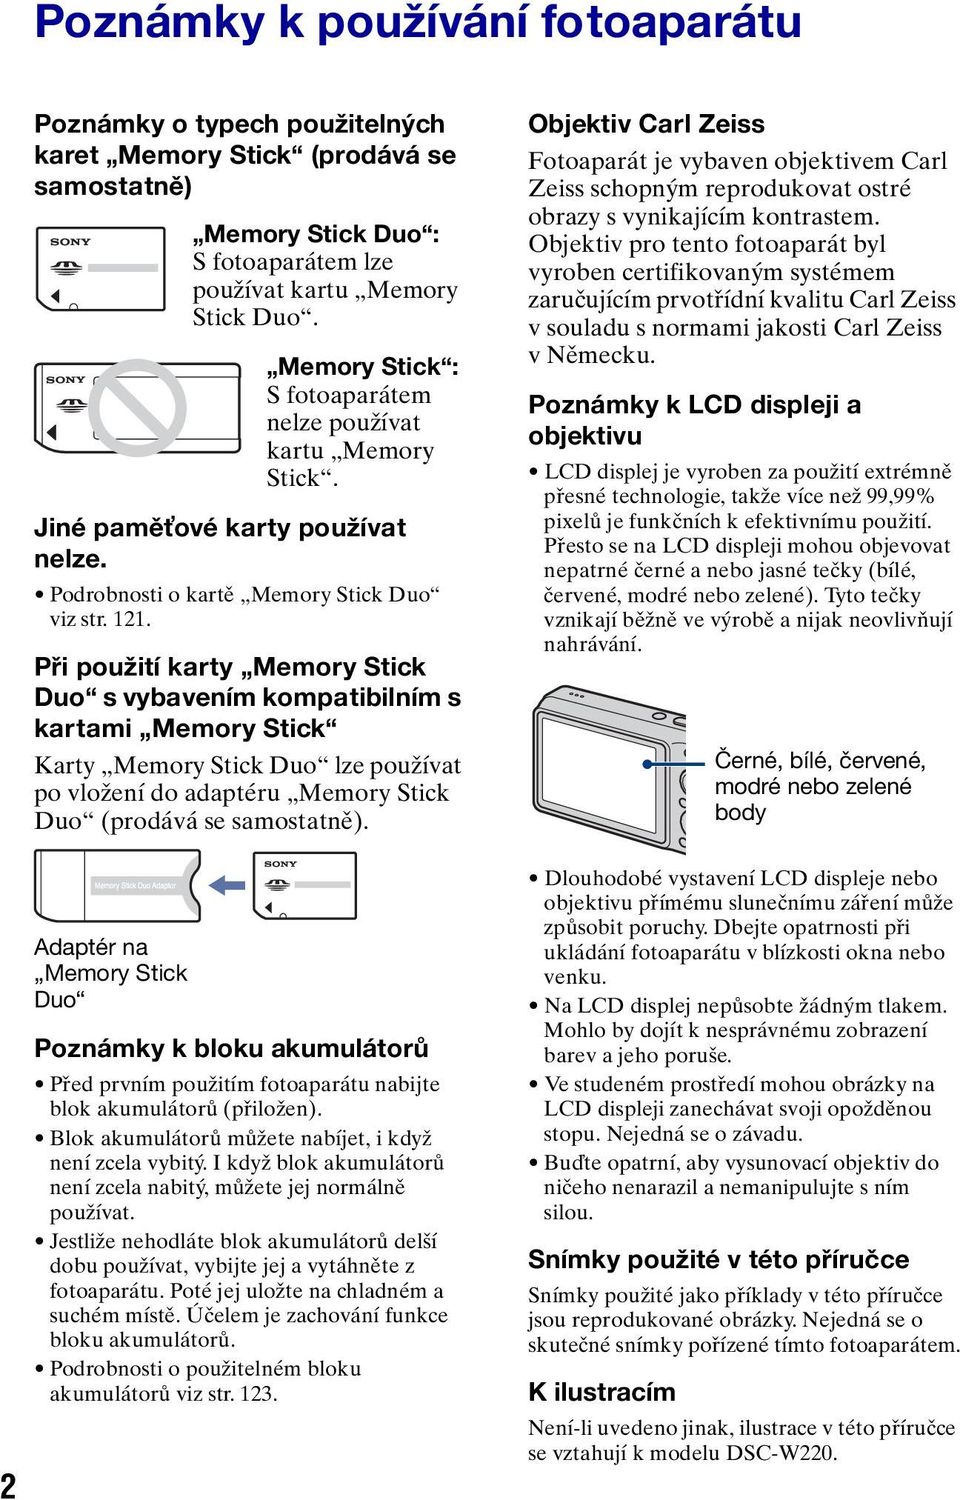 Při použití karty Memory Stick Duo s vybavením kompatibilním s kartami Memory Stick Karty Memory Stick Duo lze používat po vložení do adaptéru Memory Stick Duo (prodává se samostatně).